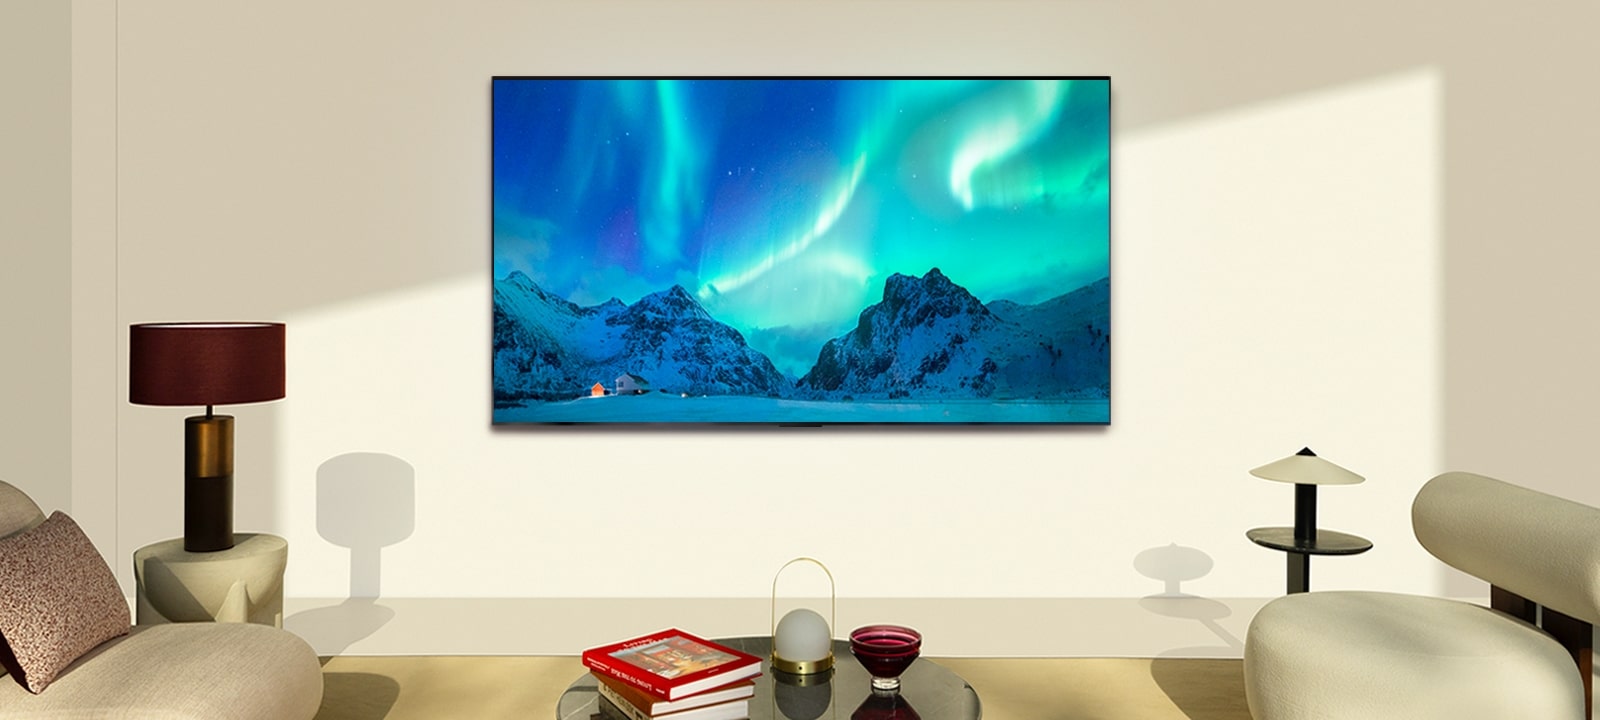 白天现代化客厅里的 LG OLED TV 和 LG 条形音箱。屏幕以绝佳的亮度显示北极光图像。